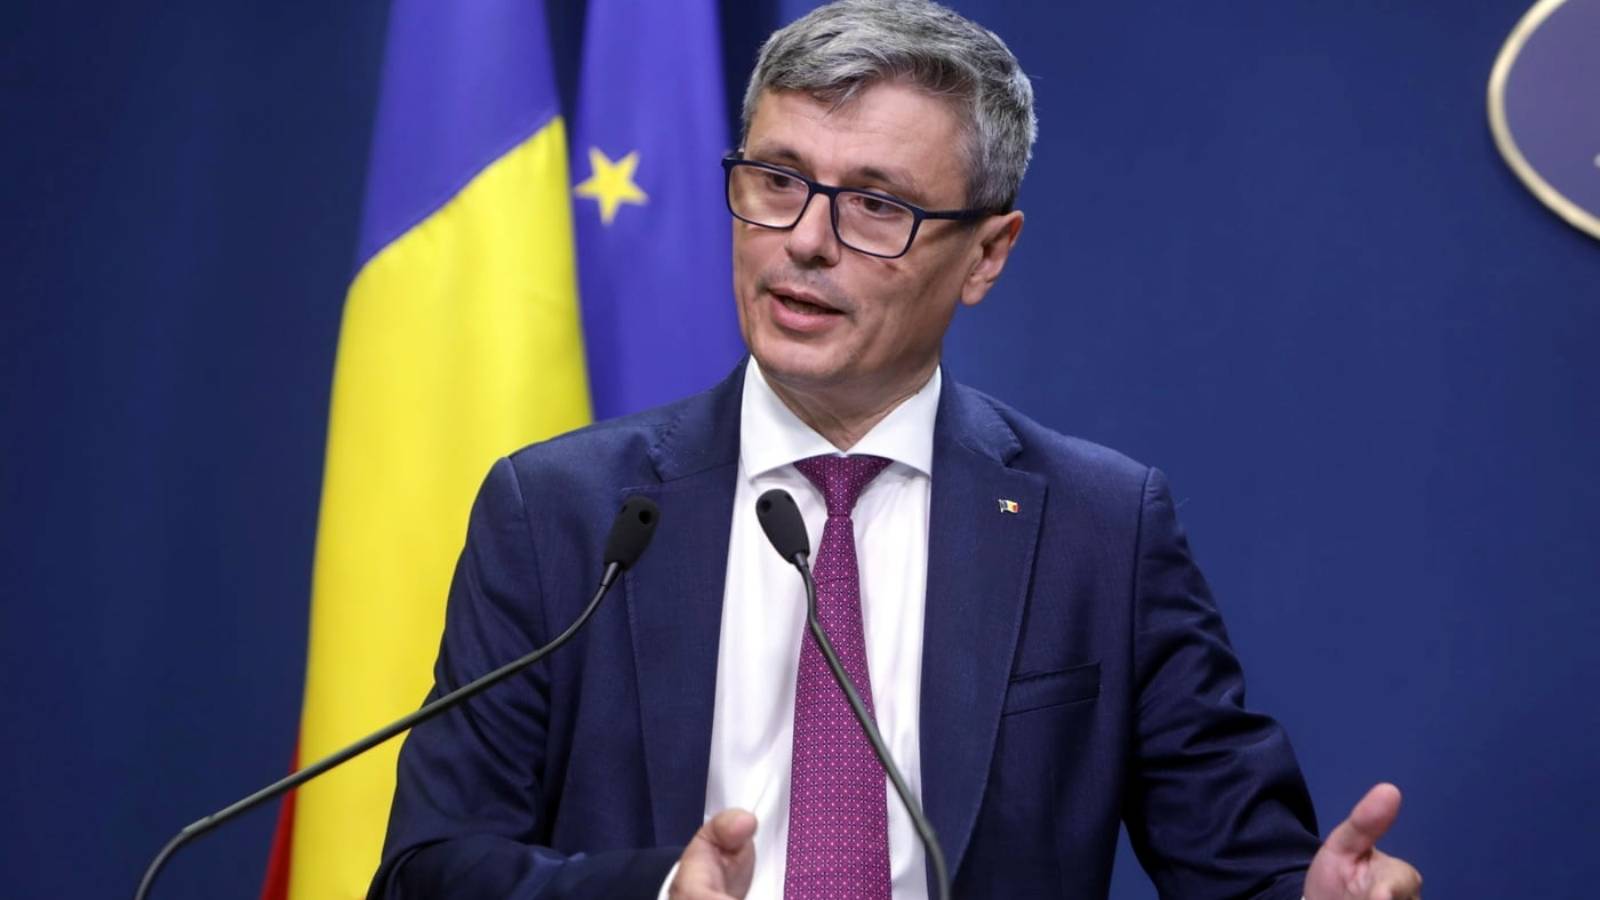 Energiaministeri Romanian viimeisin hyväksymä tärkeä lainsäädäntö